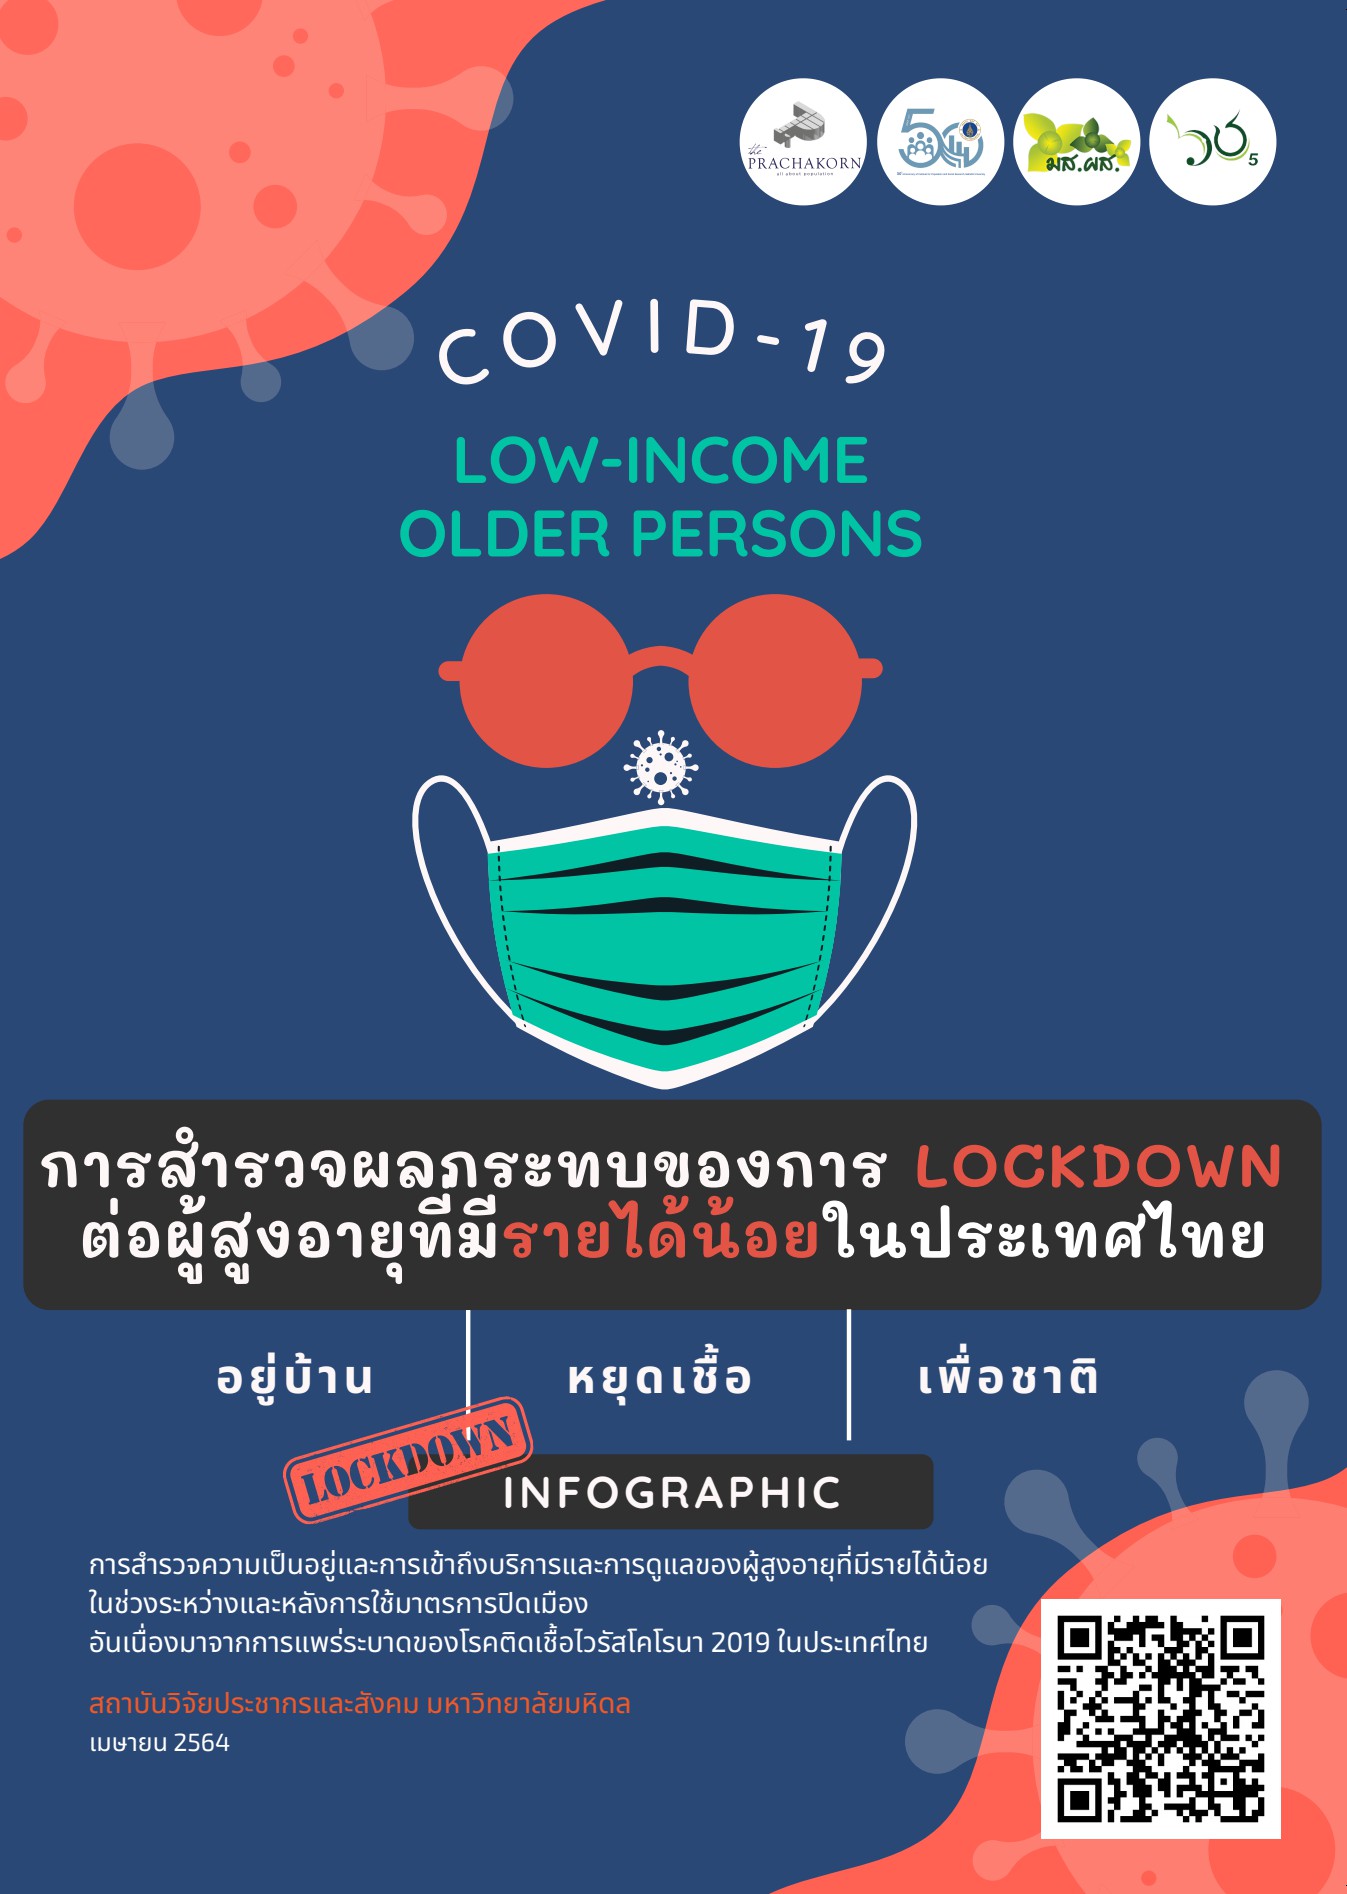 การสำรวจผลกระทบของการ Lockdown ต่อผู้สูงอายุที่มีรายได้น้อยในประเทศไทย